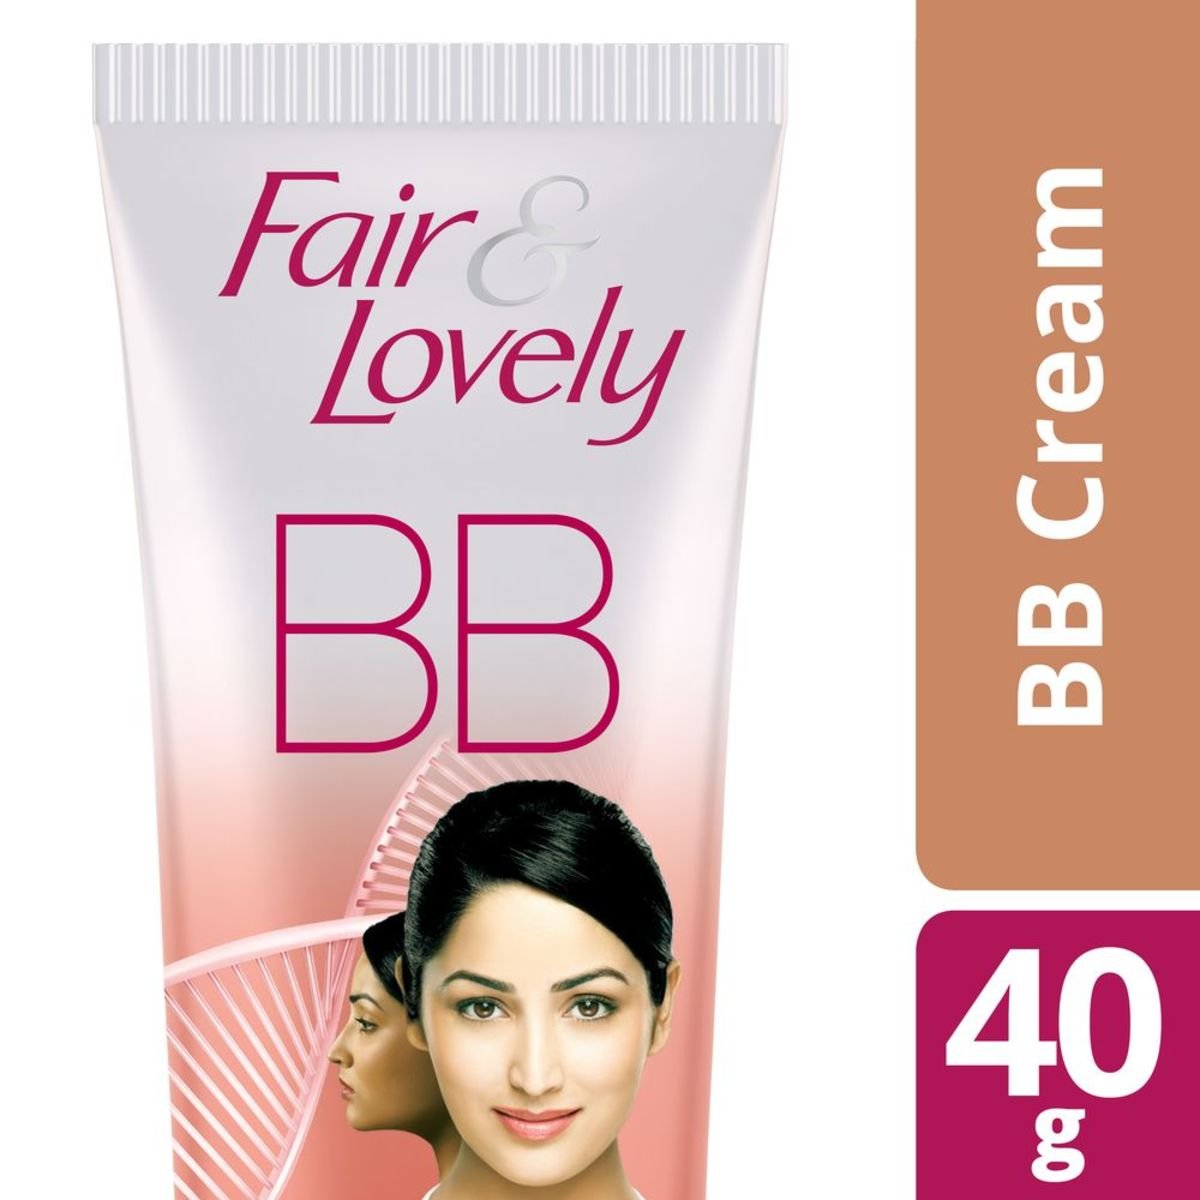 Fair & Lovely BB Foundation Face Cream 40 g